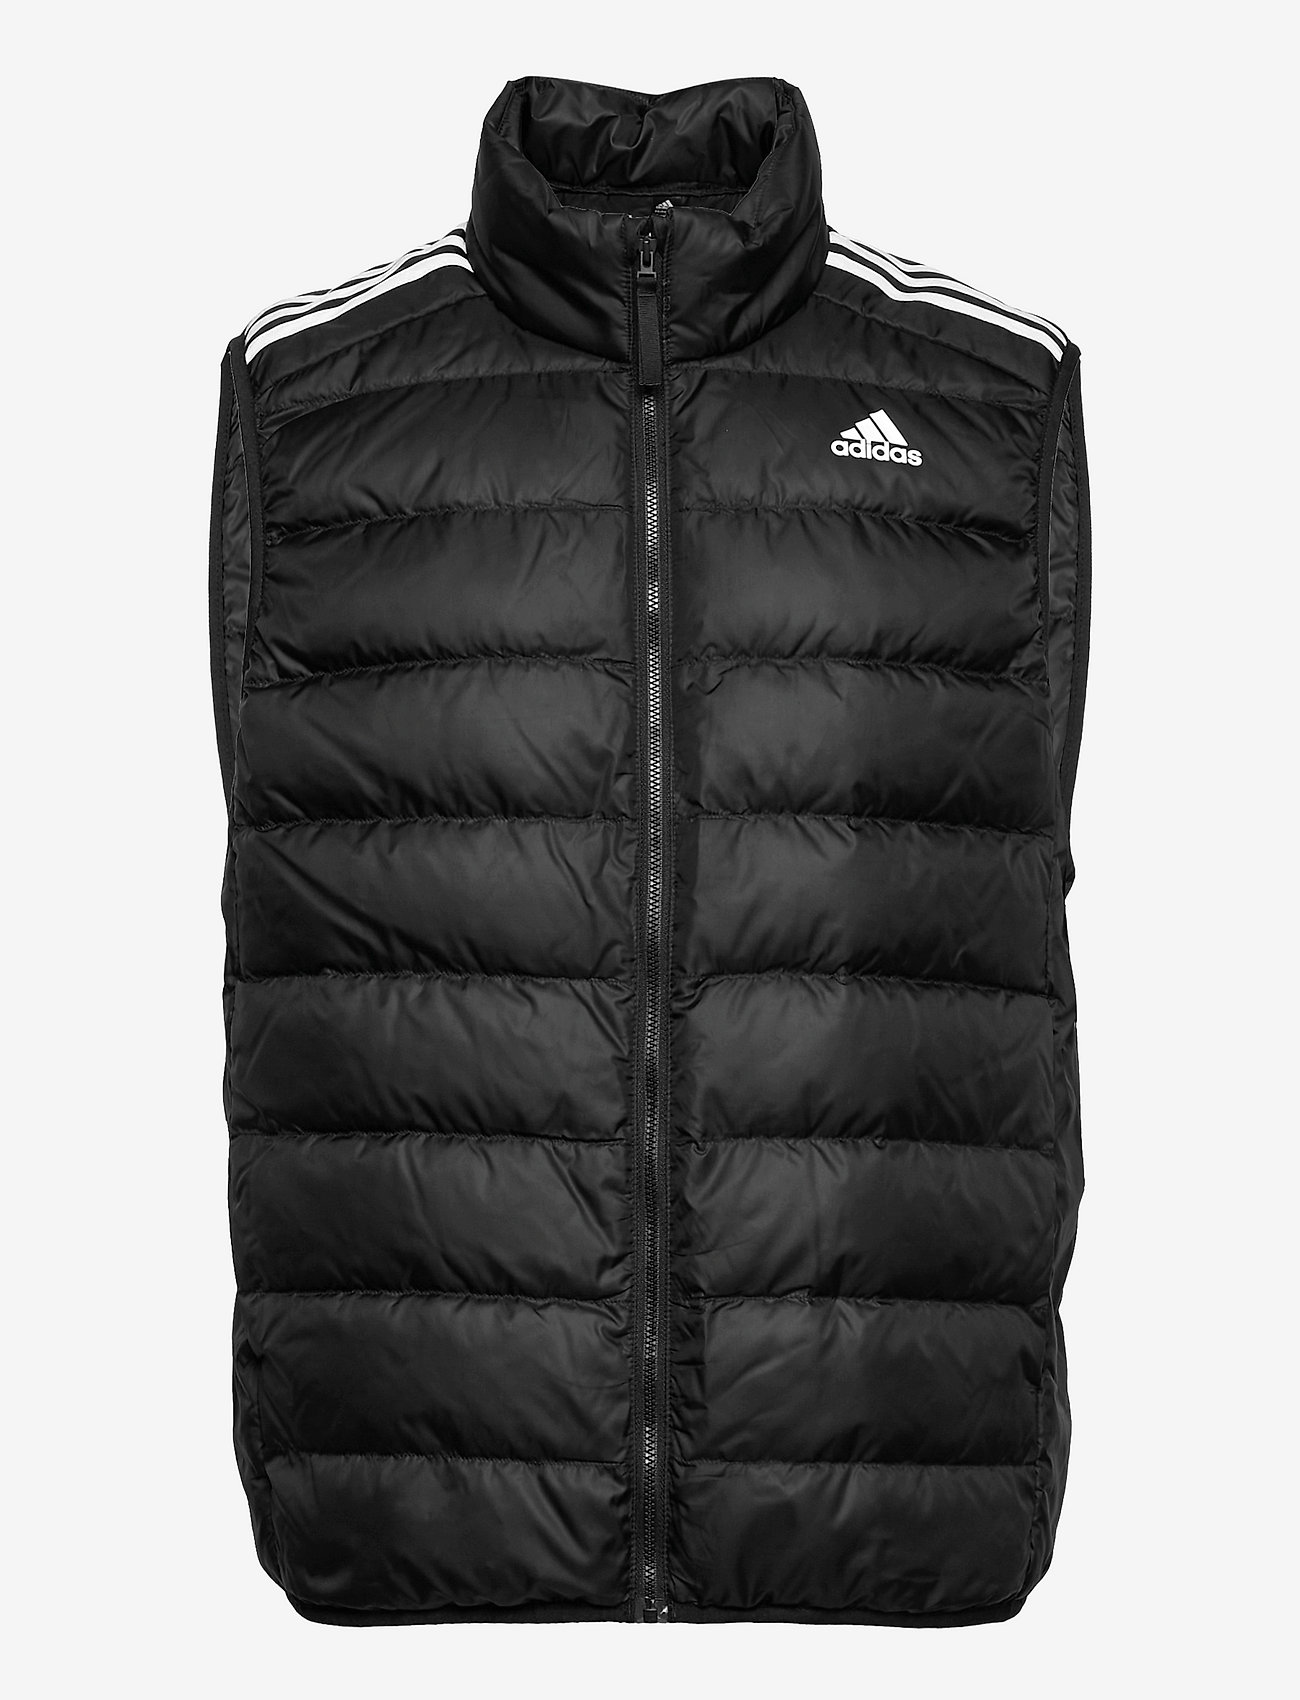 adidas Sportswear - Essentials Light Down Vest - spring jackets - black - 0